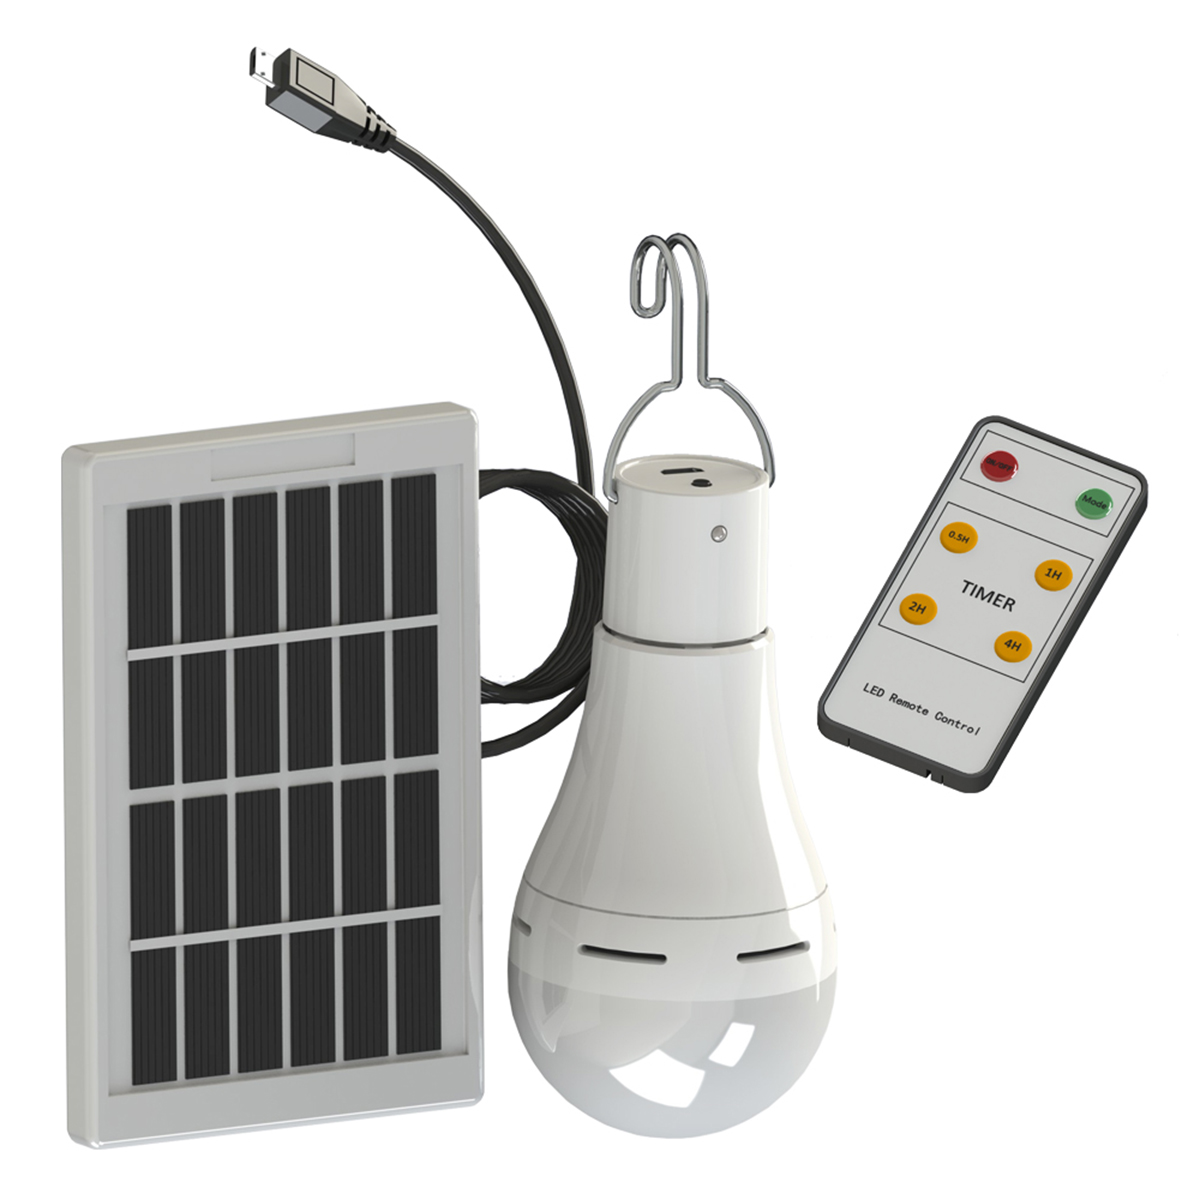 

20 Вт Солнечная Питание USB Аккумуляторная Кемпинг Лампа 5-режимная с Солнечная Панель 3 м Кабель и Дистанционный